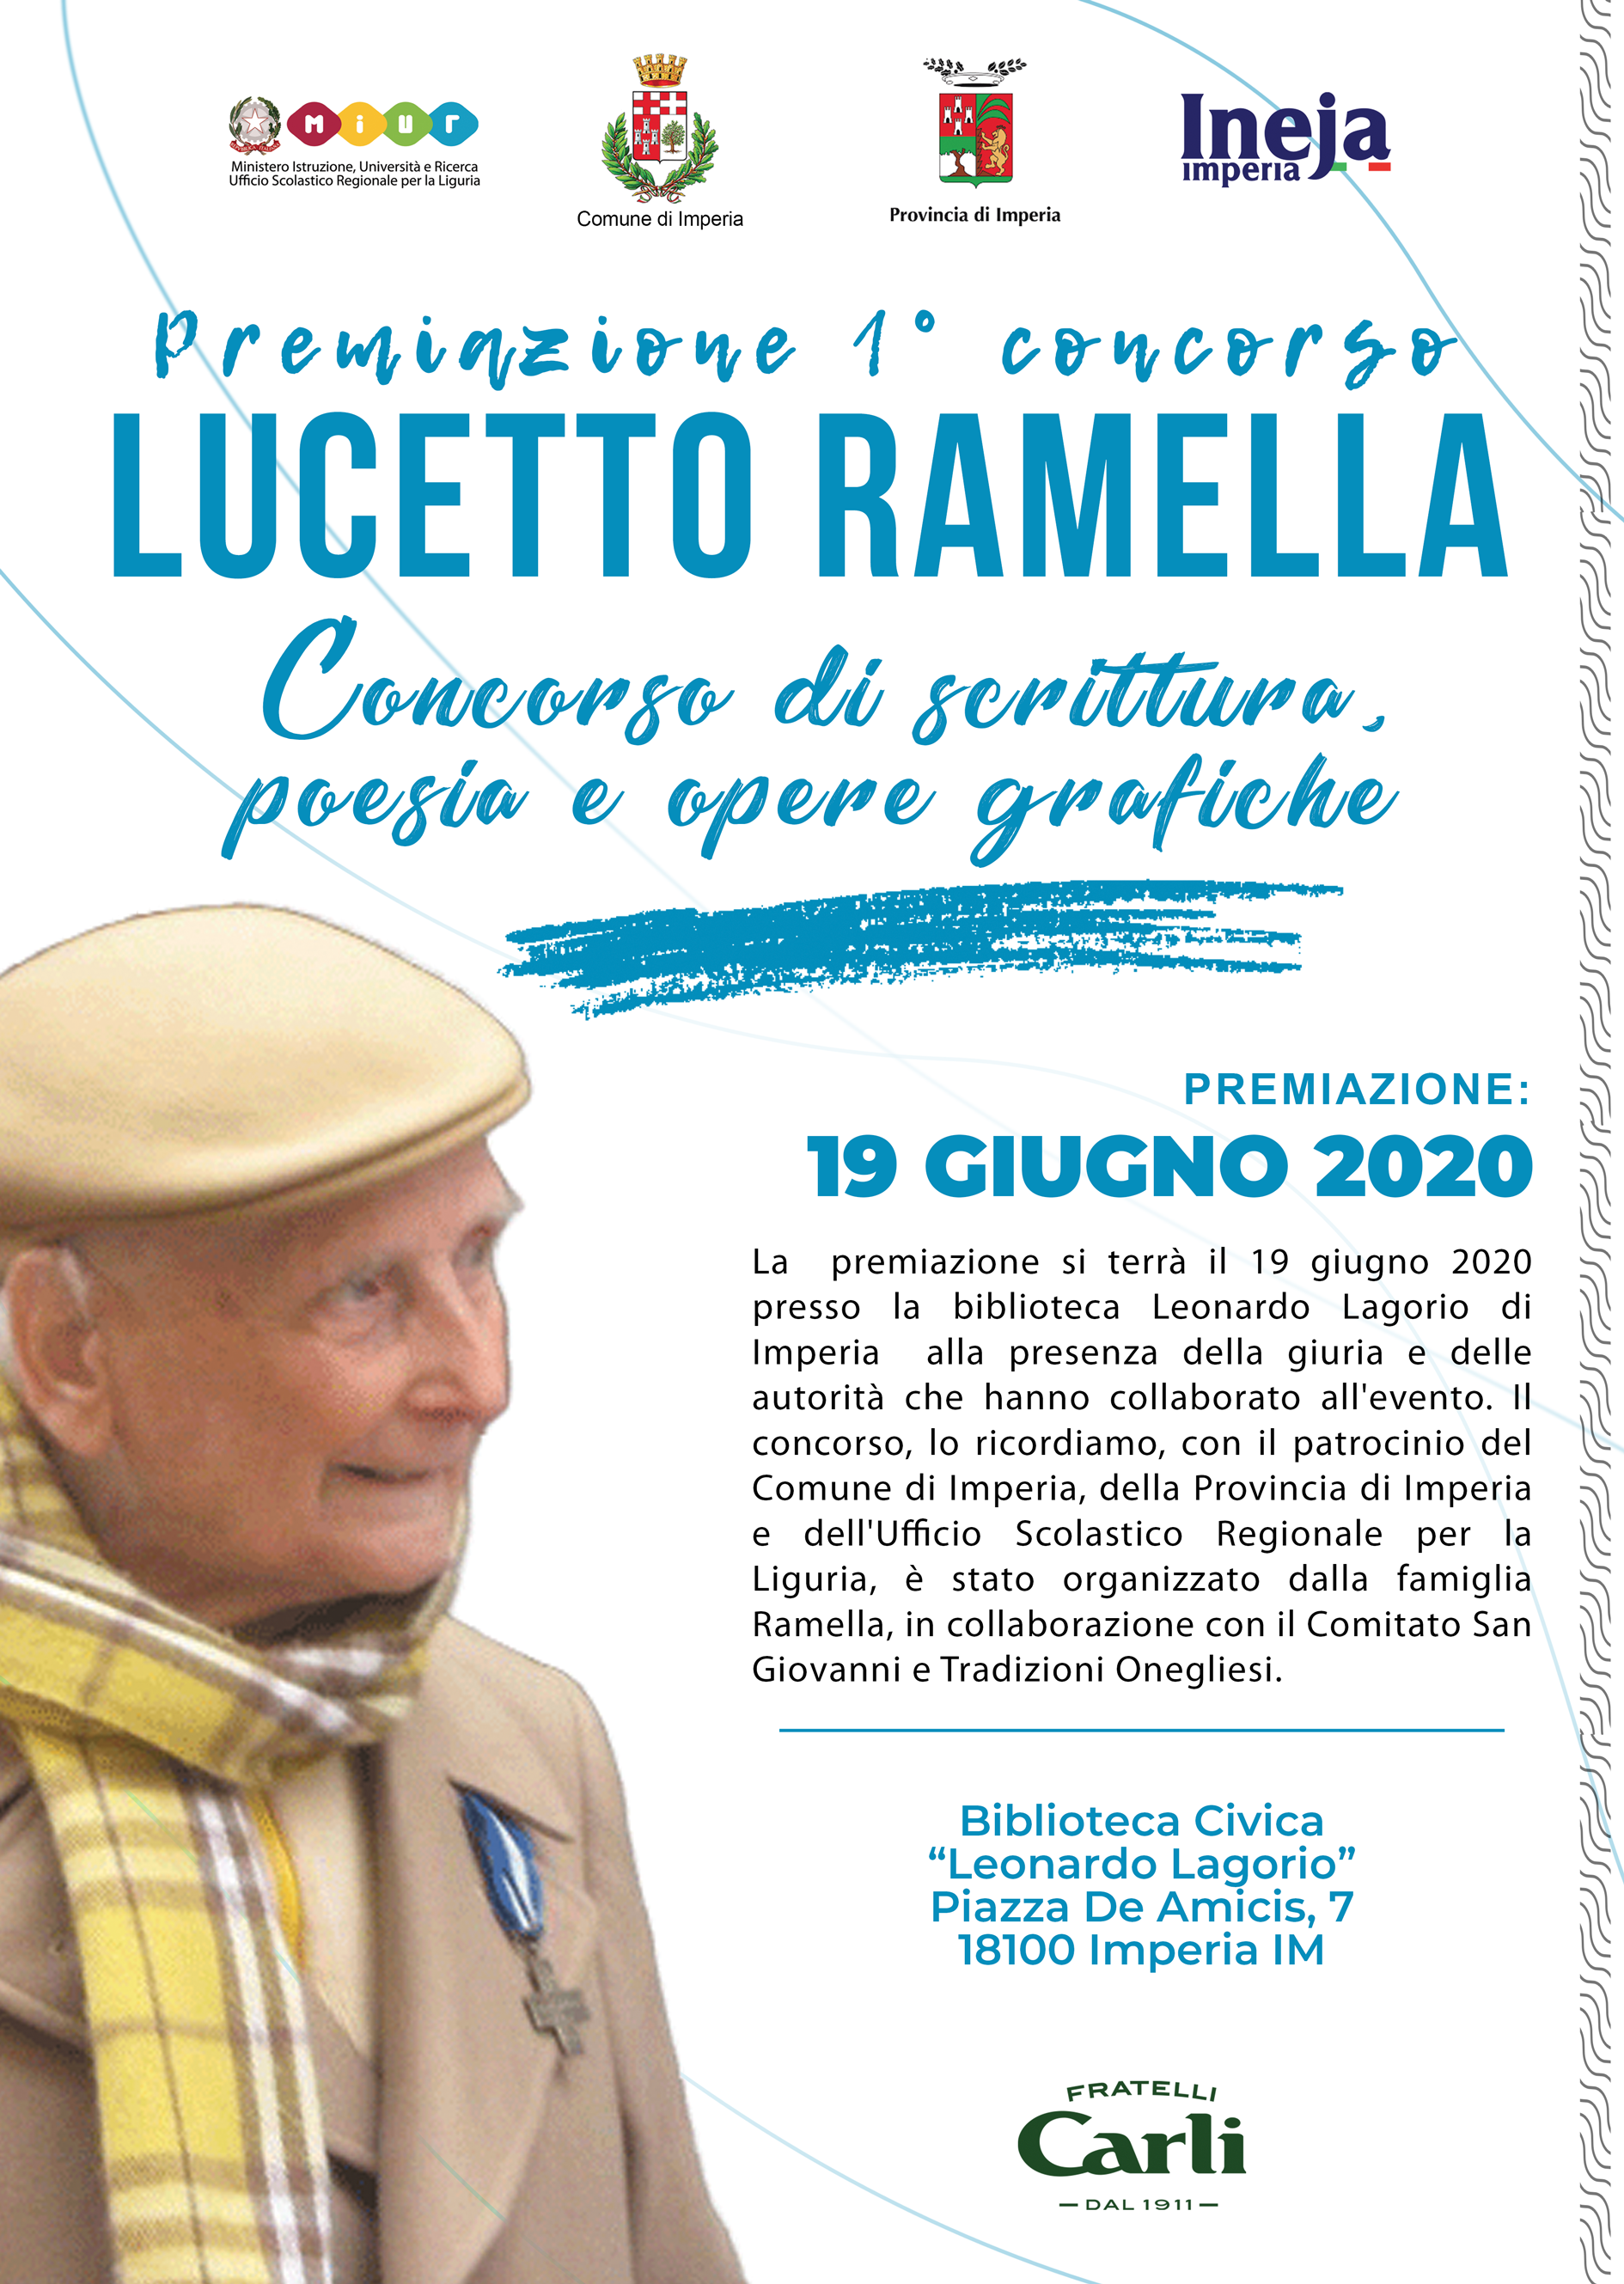 loc_lucetto_ramella_premiazione_2020